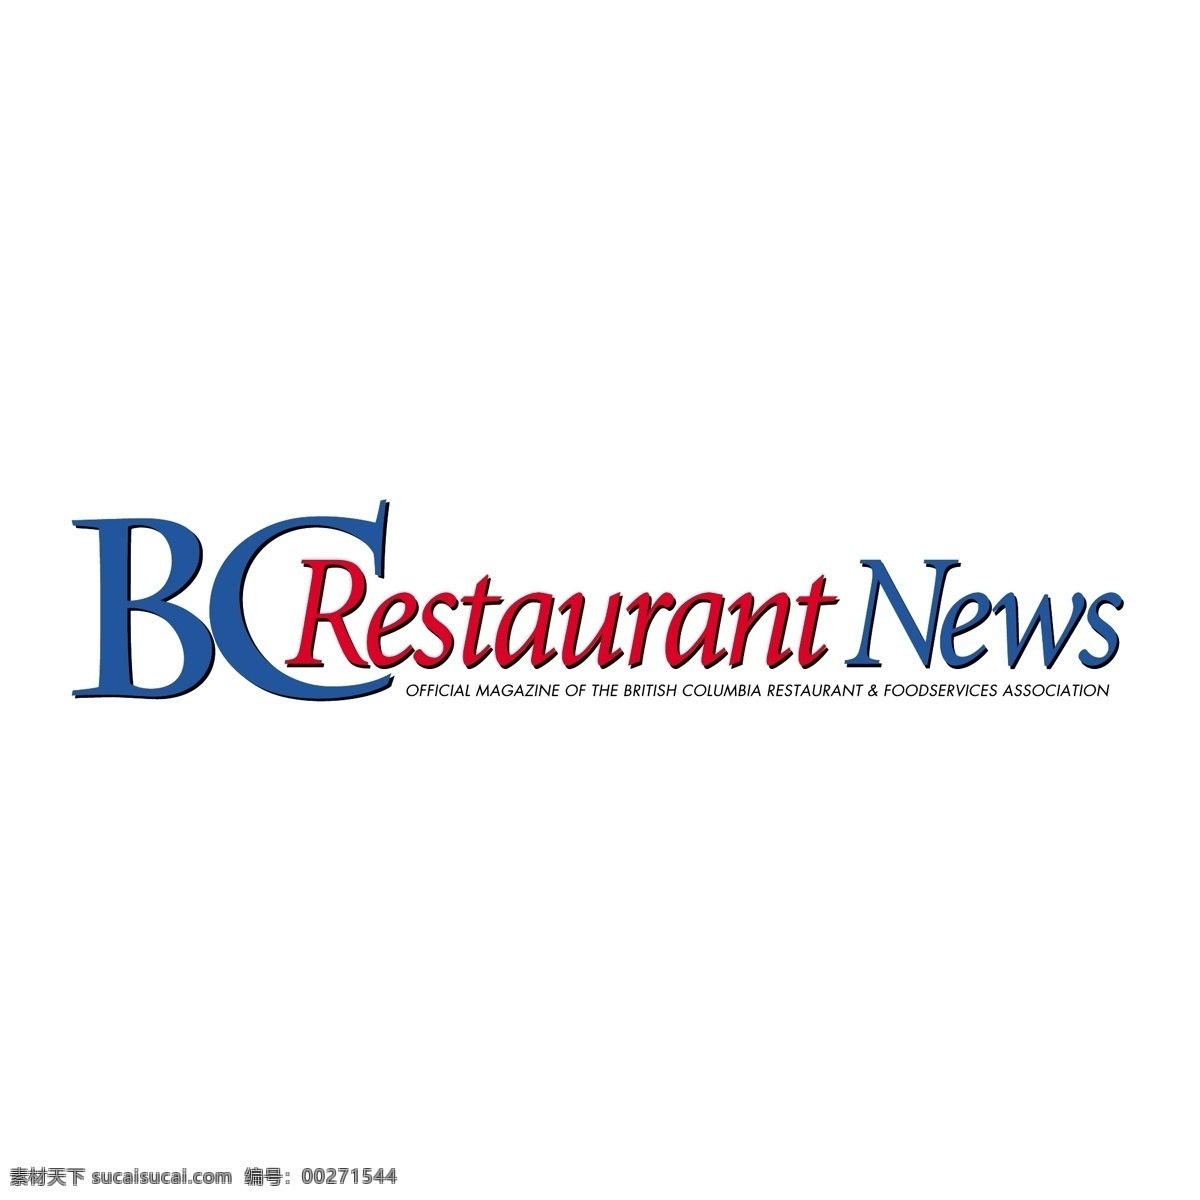 公元前 餐馆 新闻 自由 餐厅 标志 标识 bc psd源文件 logo设计